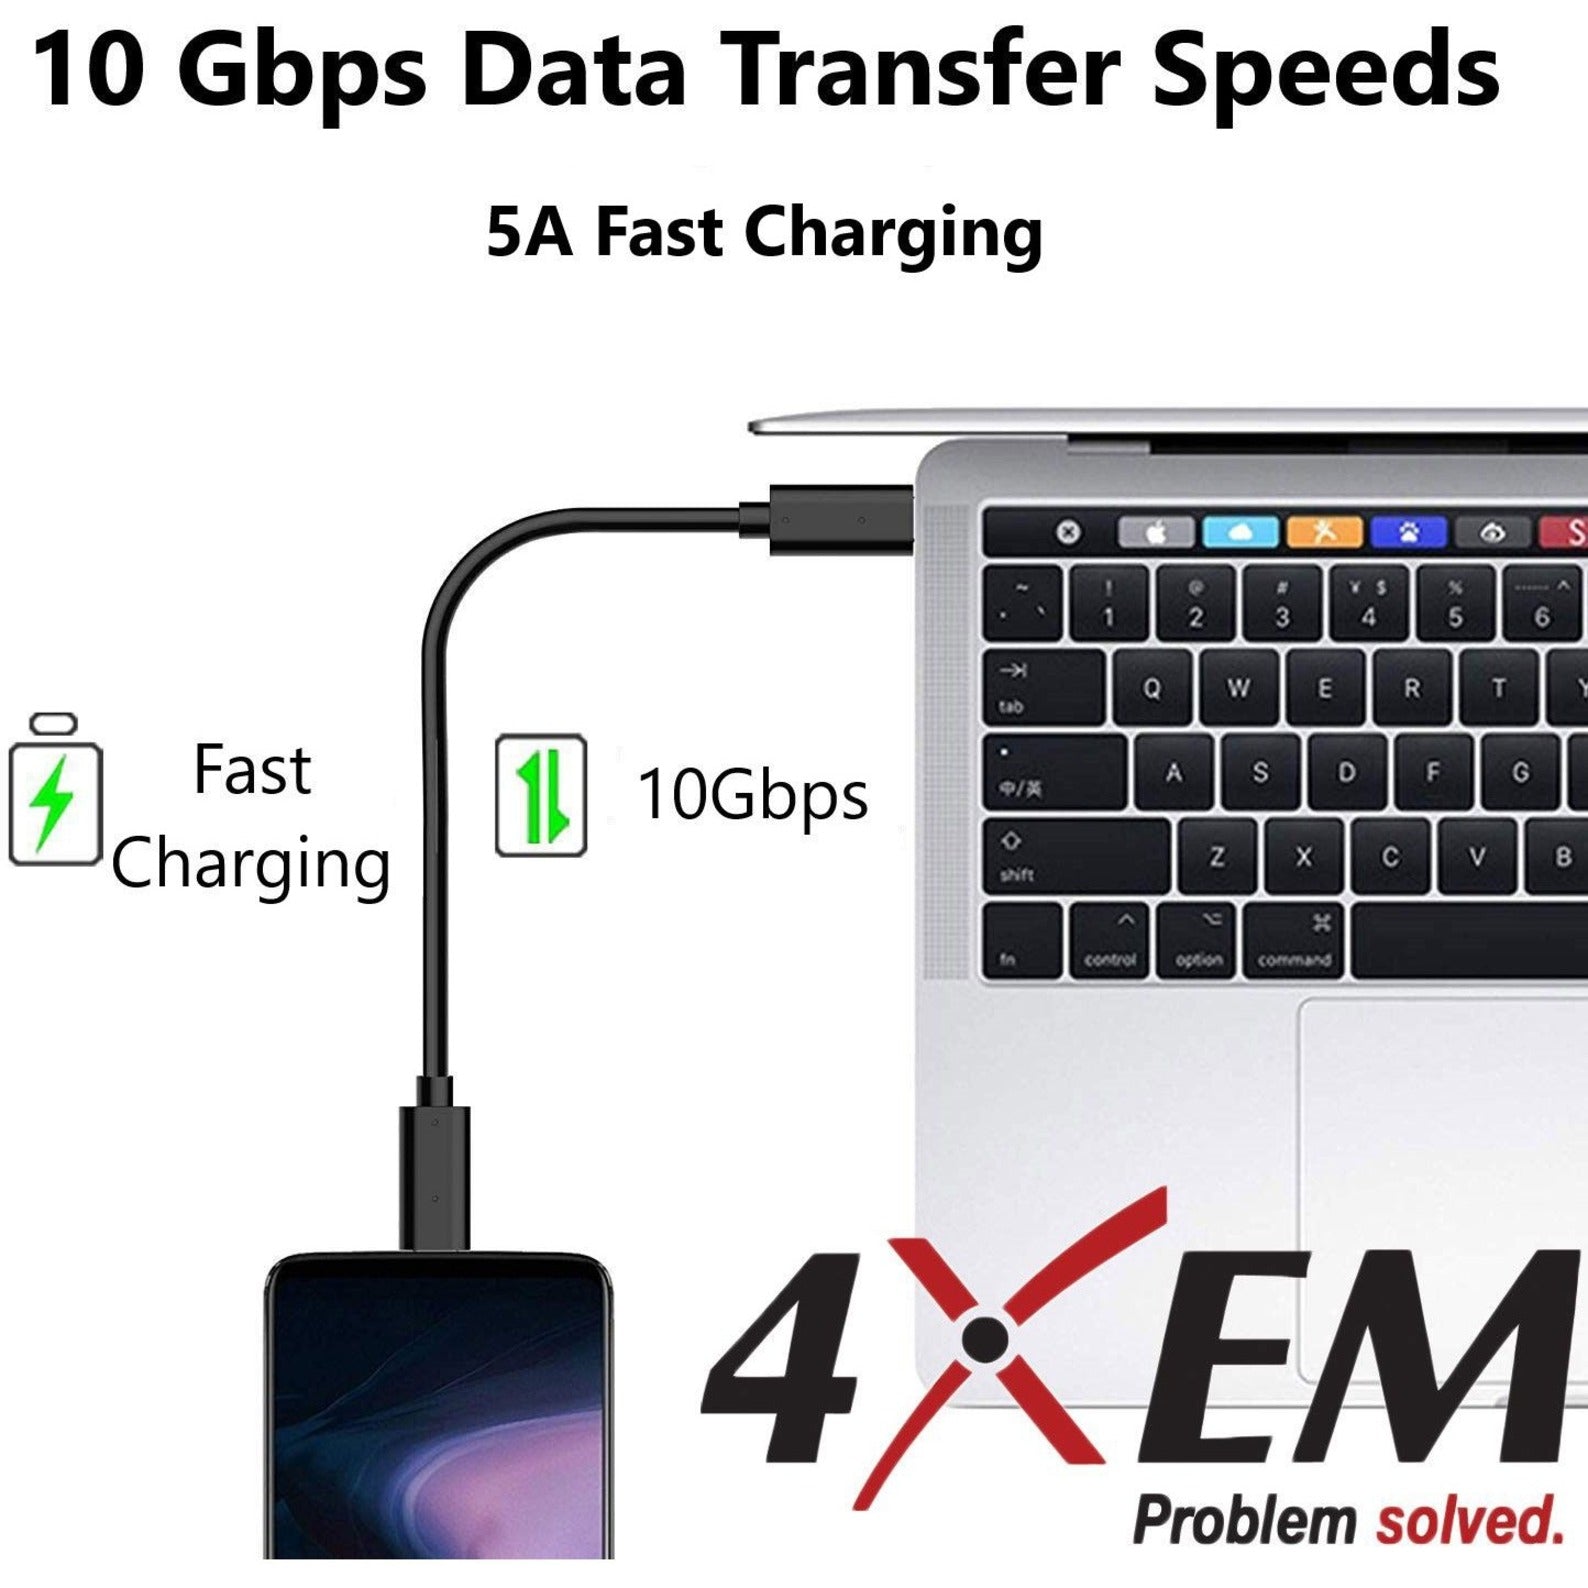 4XEM 4XUSBCC31G23W 3FT/1M USB-C To USB-C Cable M/M USB 3.1 Gen 2 10GBPS, Reversible Charging, E-marker Chip, White